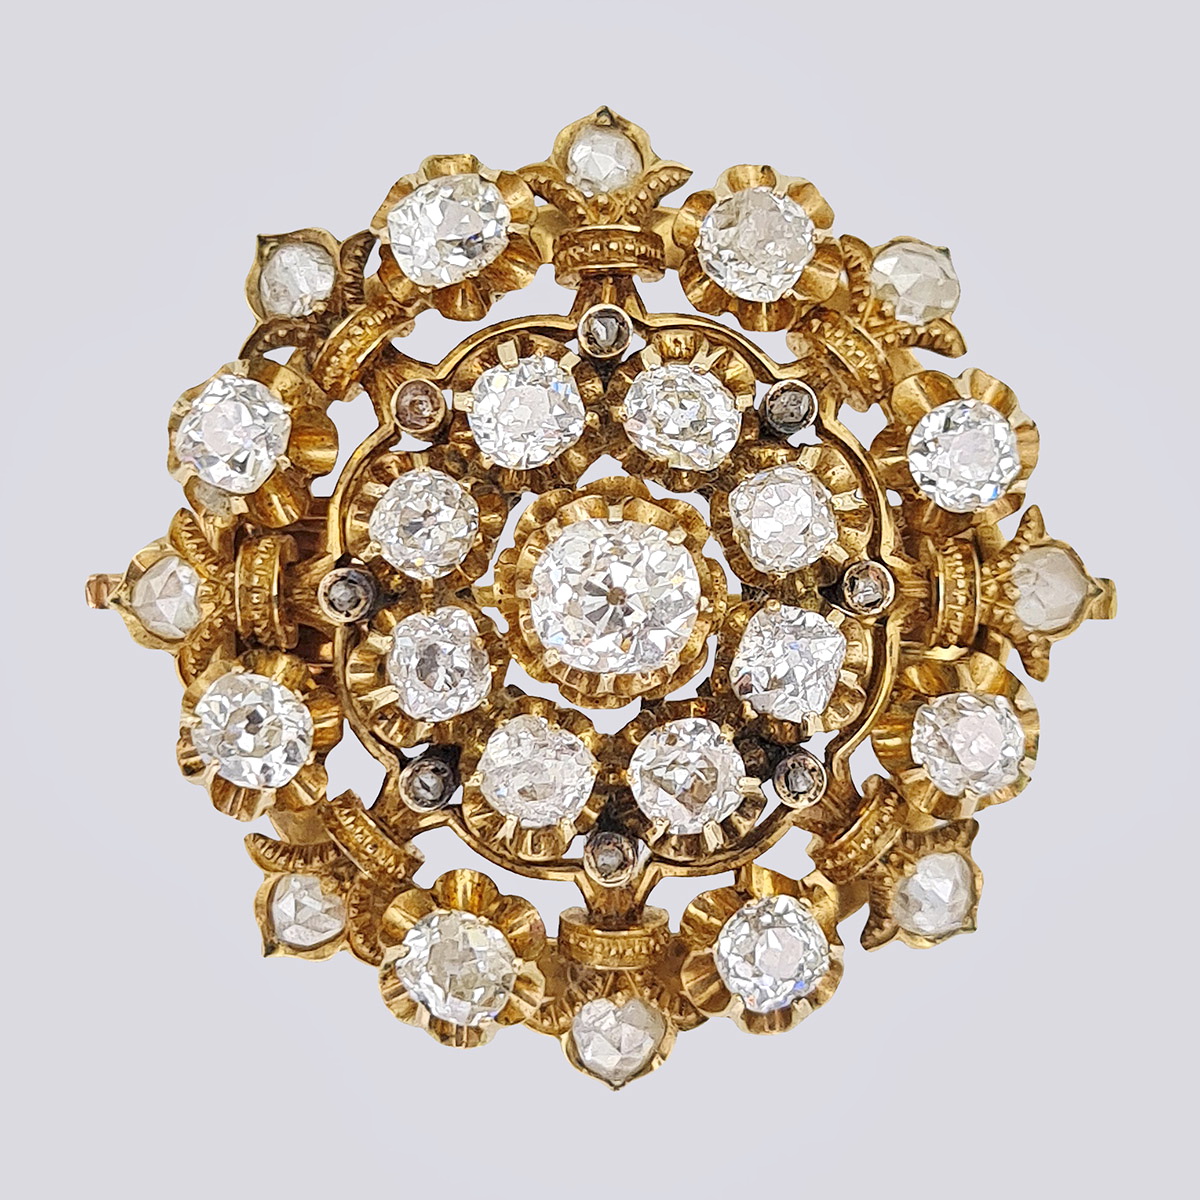 Антикварная золотая брошь 56 пробы с бриллиантами старой огранки и алмазами